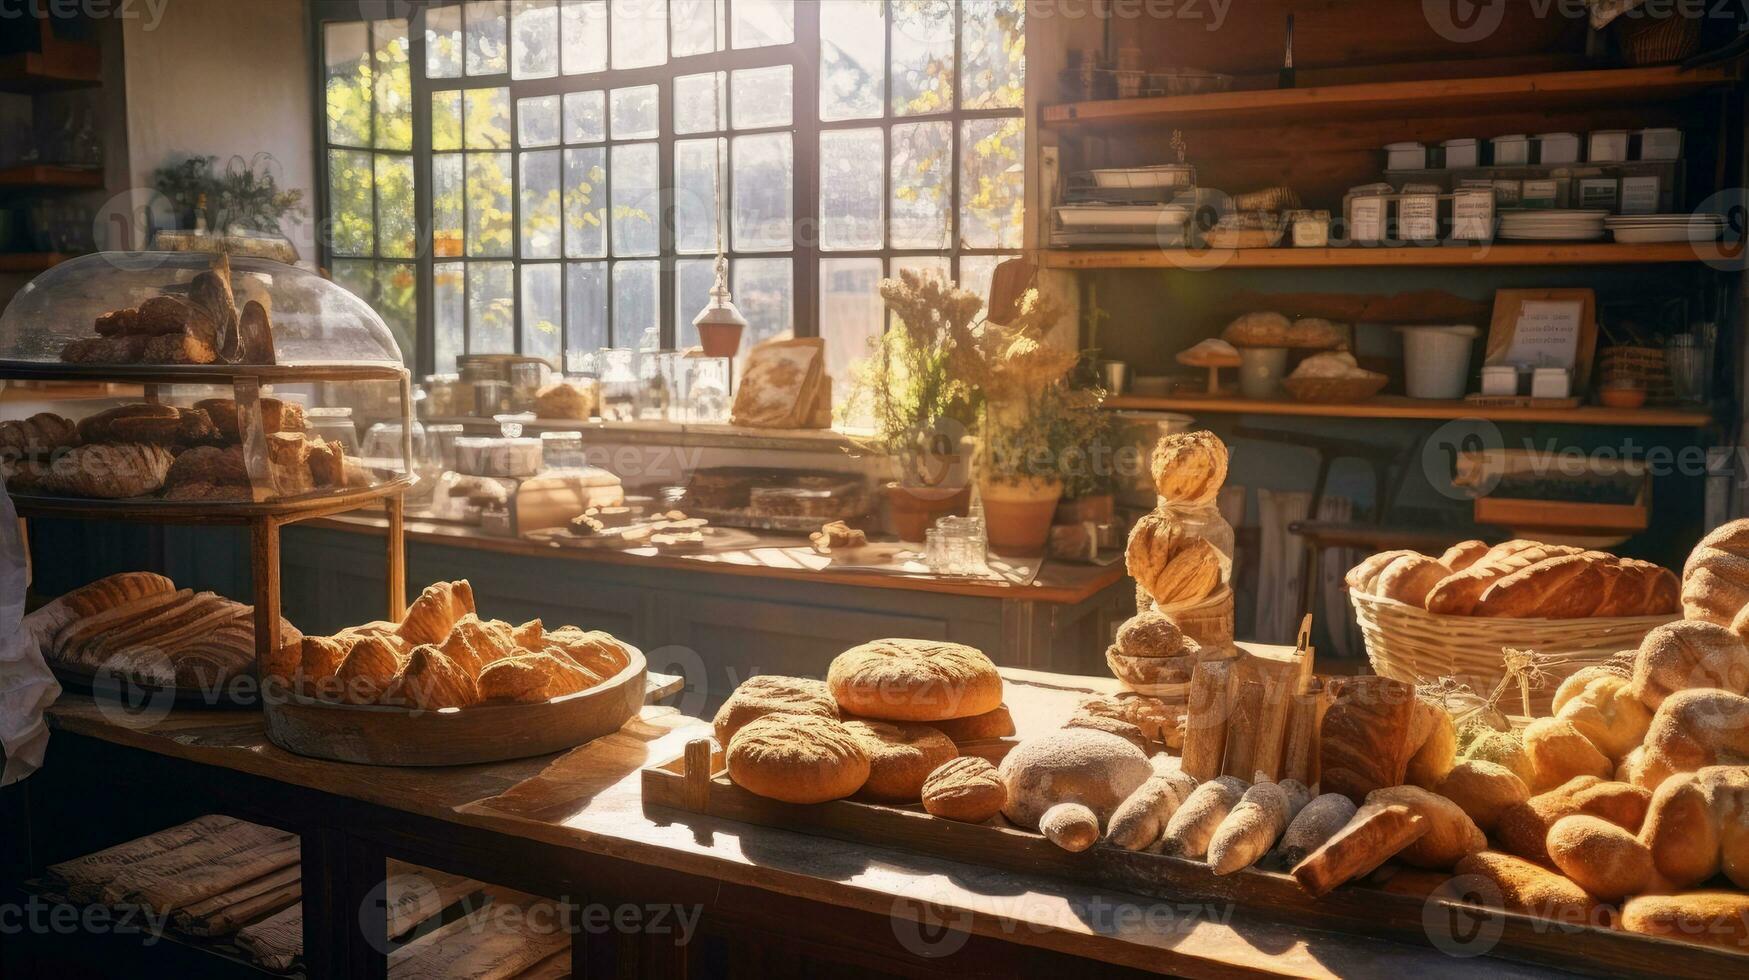 banketbakkerij bakkerij met vitrines en vers gebakjes in de stralen van zonlicht foto